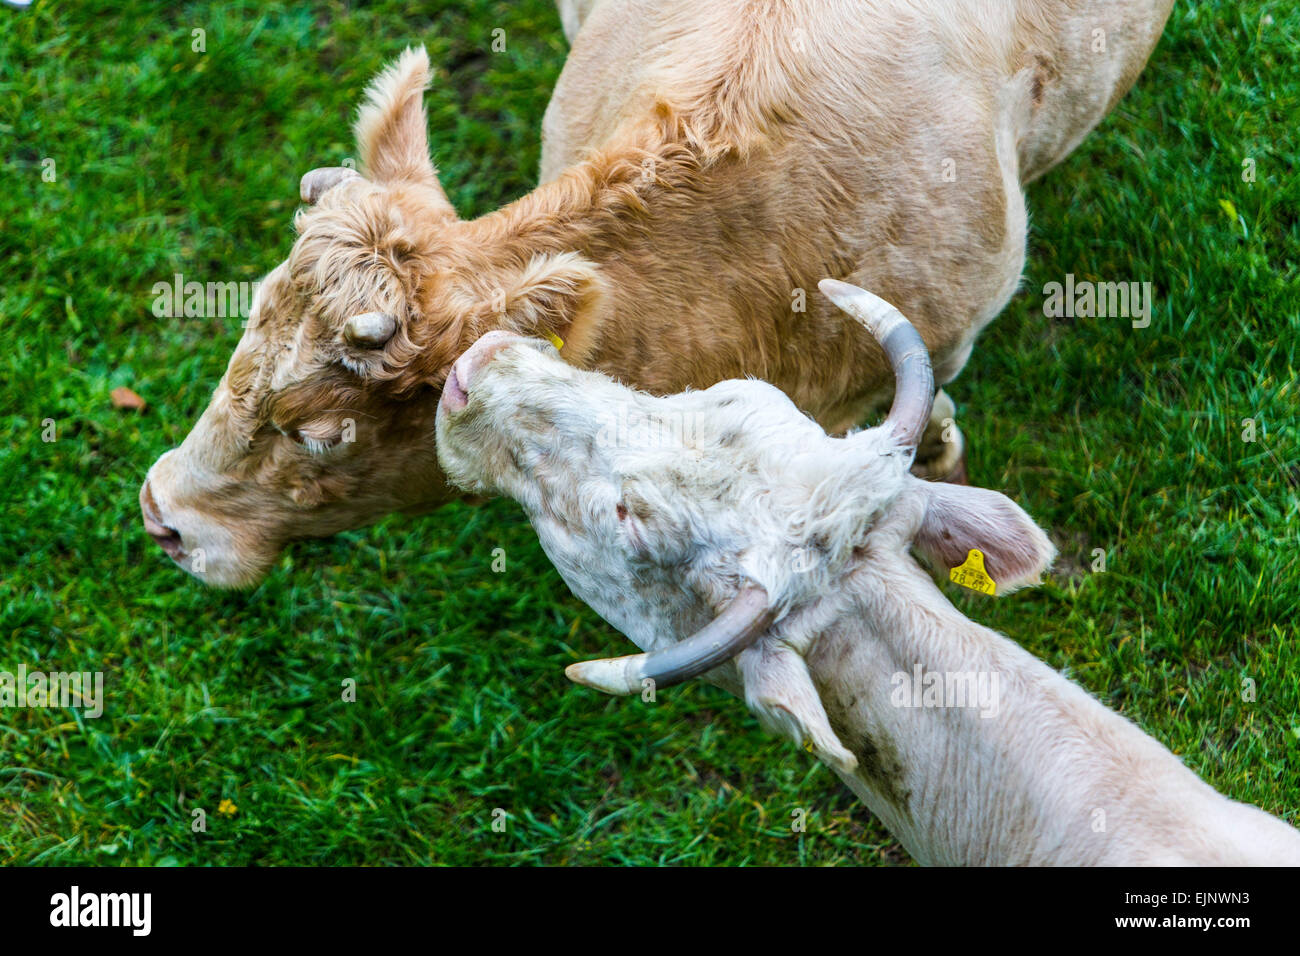 Le mucche in un pascolo, coccola, madre mucca con vitello Foto Stock